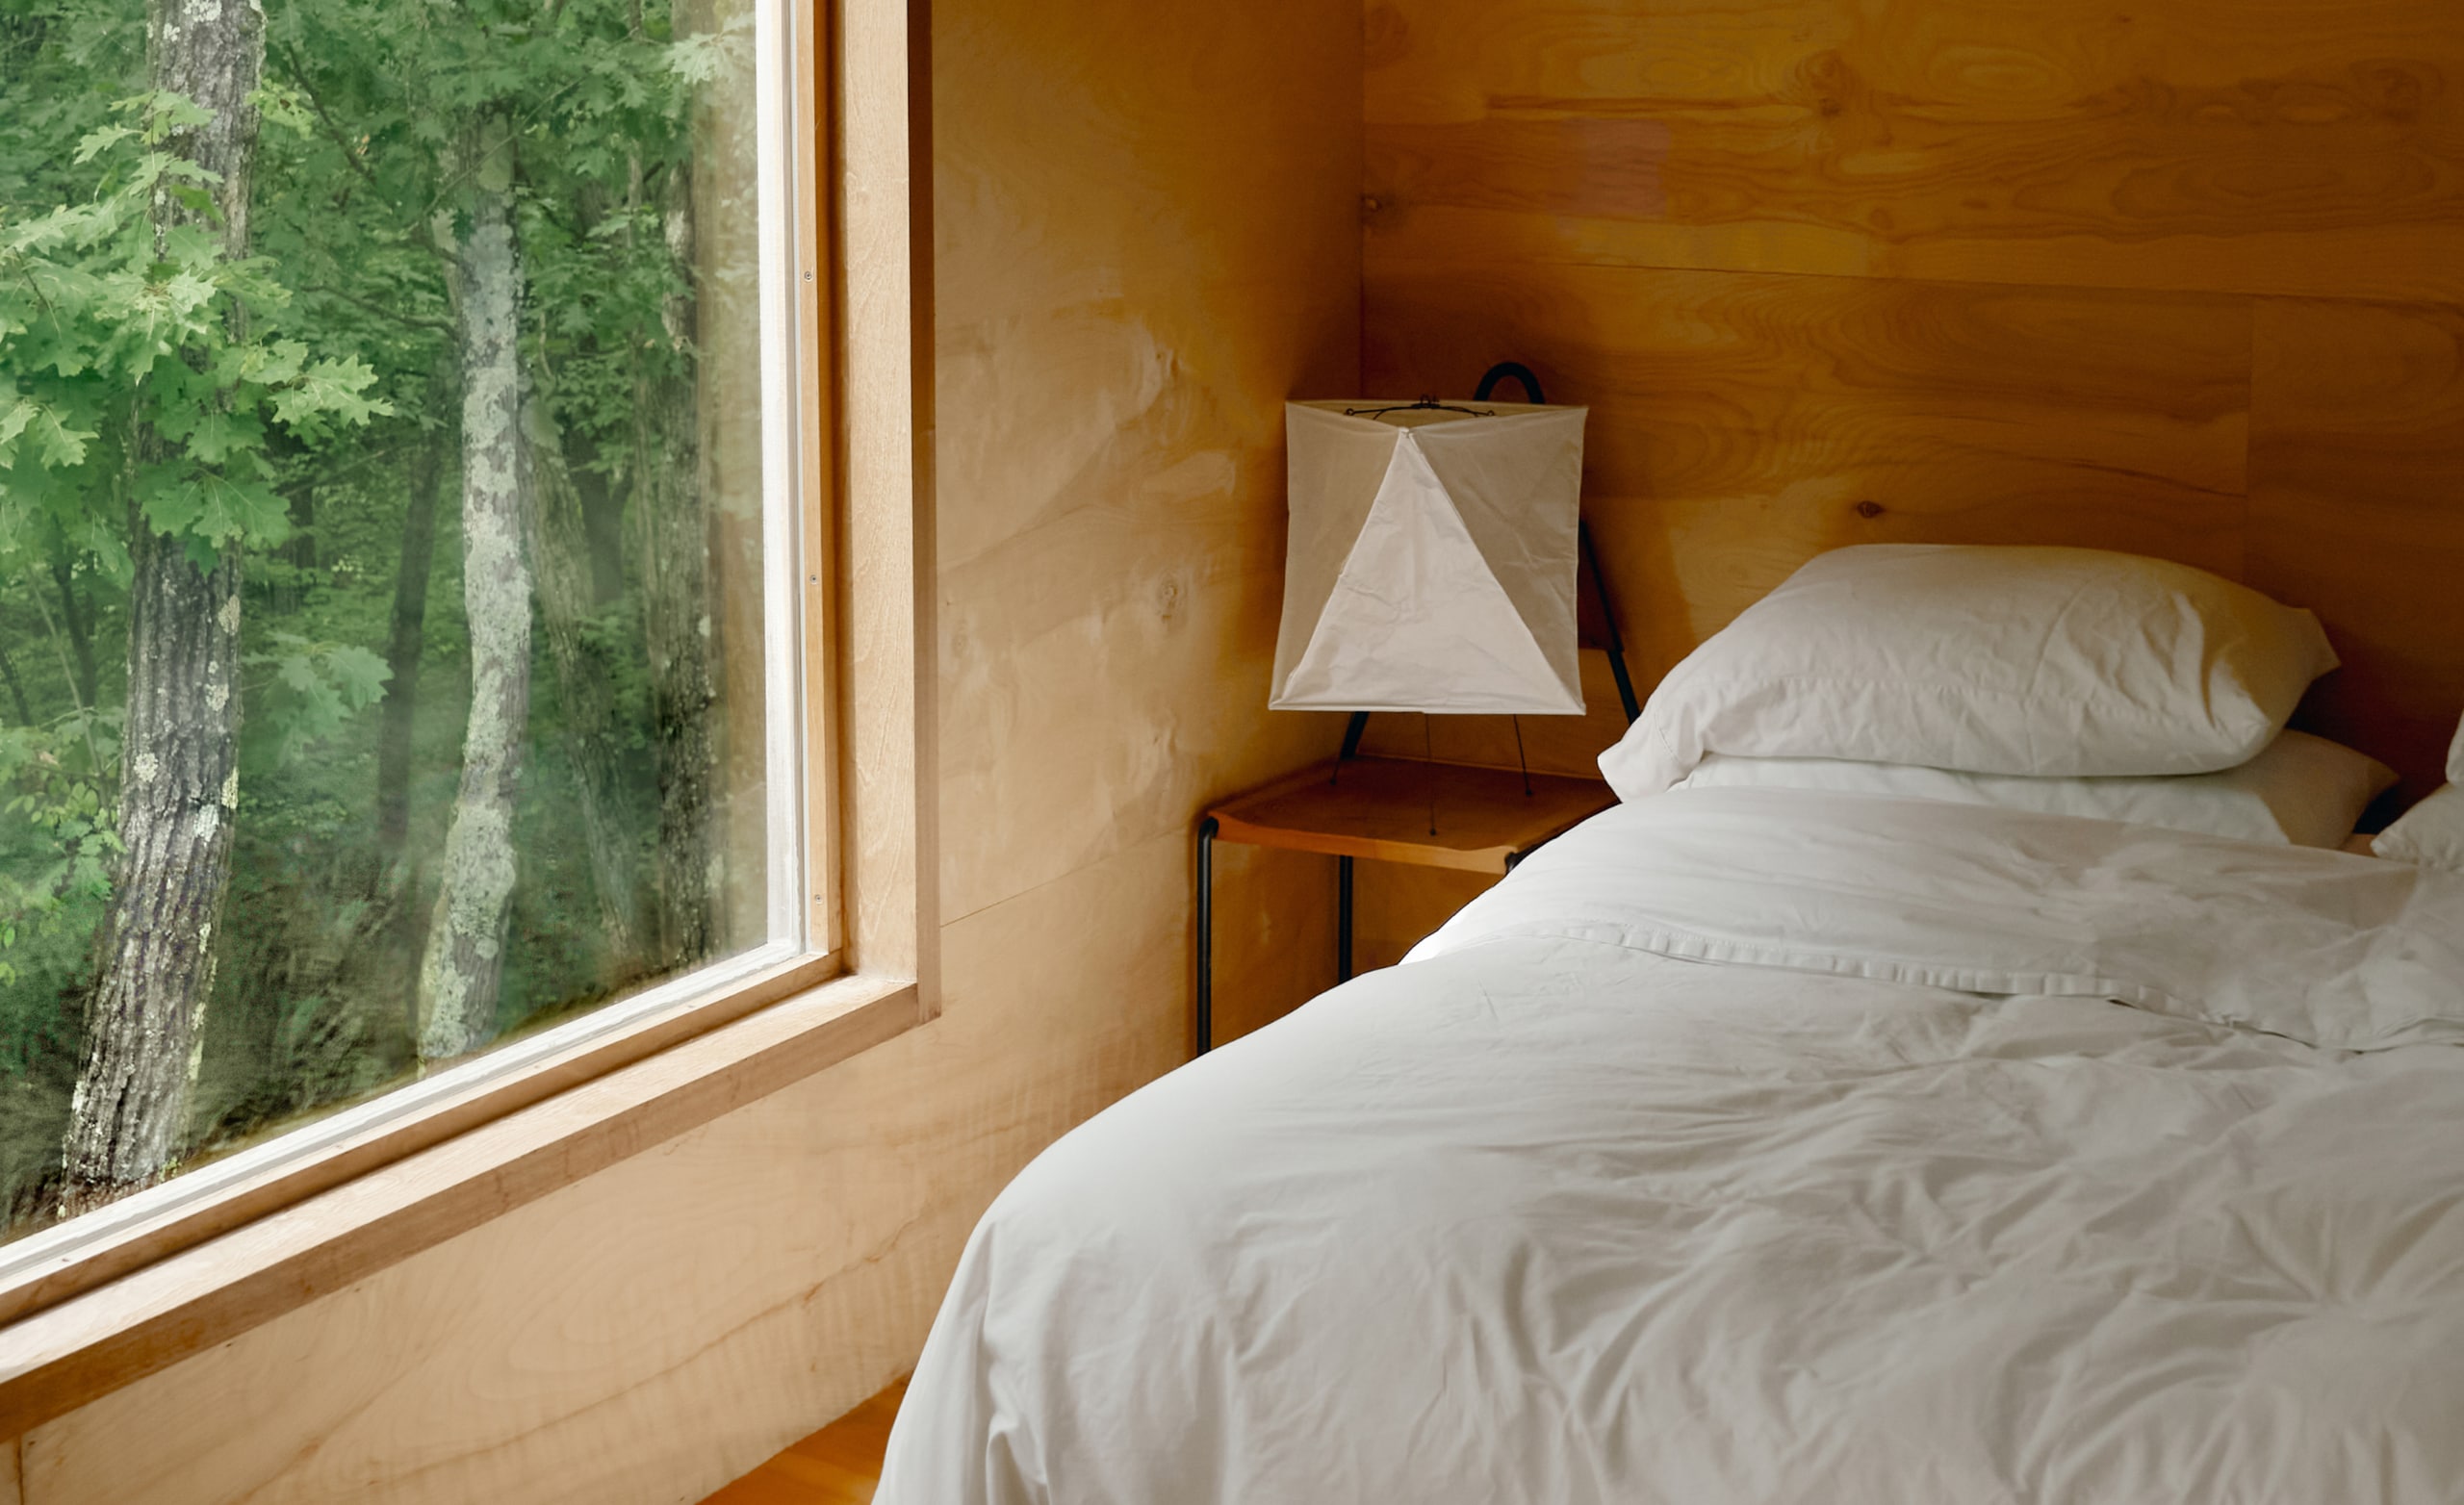 ห้องนอนที่มีผ้าปูสีขาวบนเตียงที่เพิ่งจัด และมีหน้าต่างบานใหญ่ที่มองออกไปเห็นต้นไม้ด้านนอก